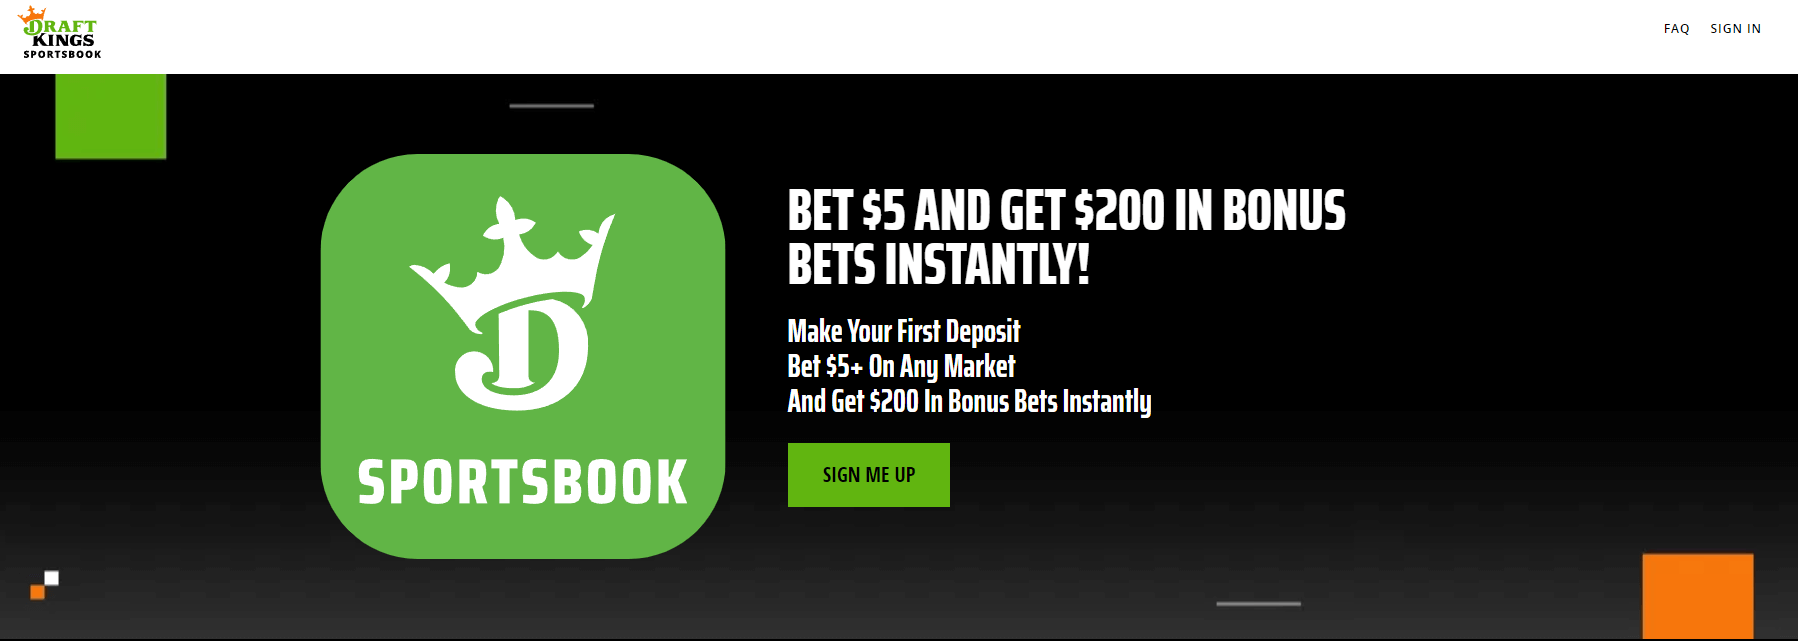 DraftKings Bet $5, Get $200 promo webpage screenshot